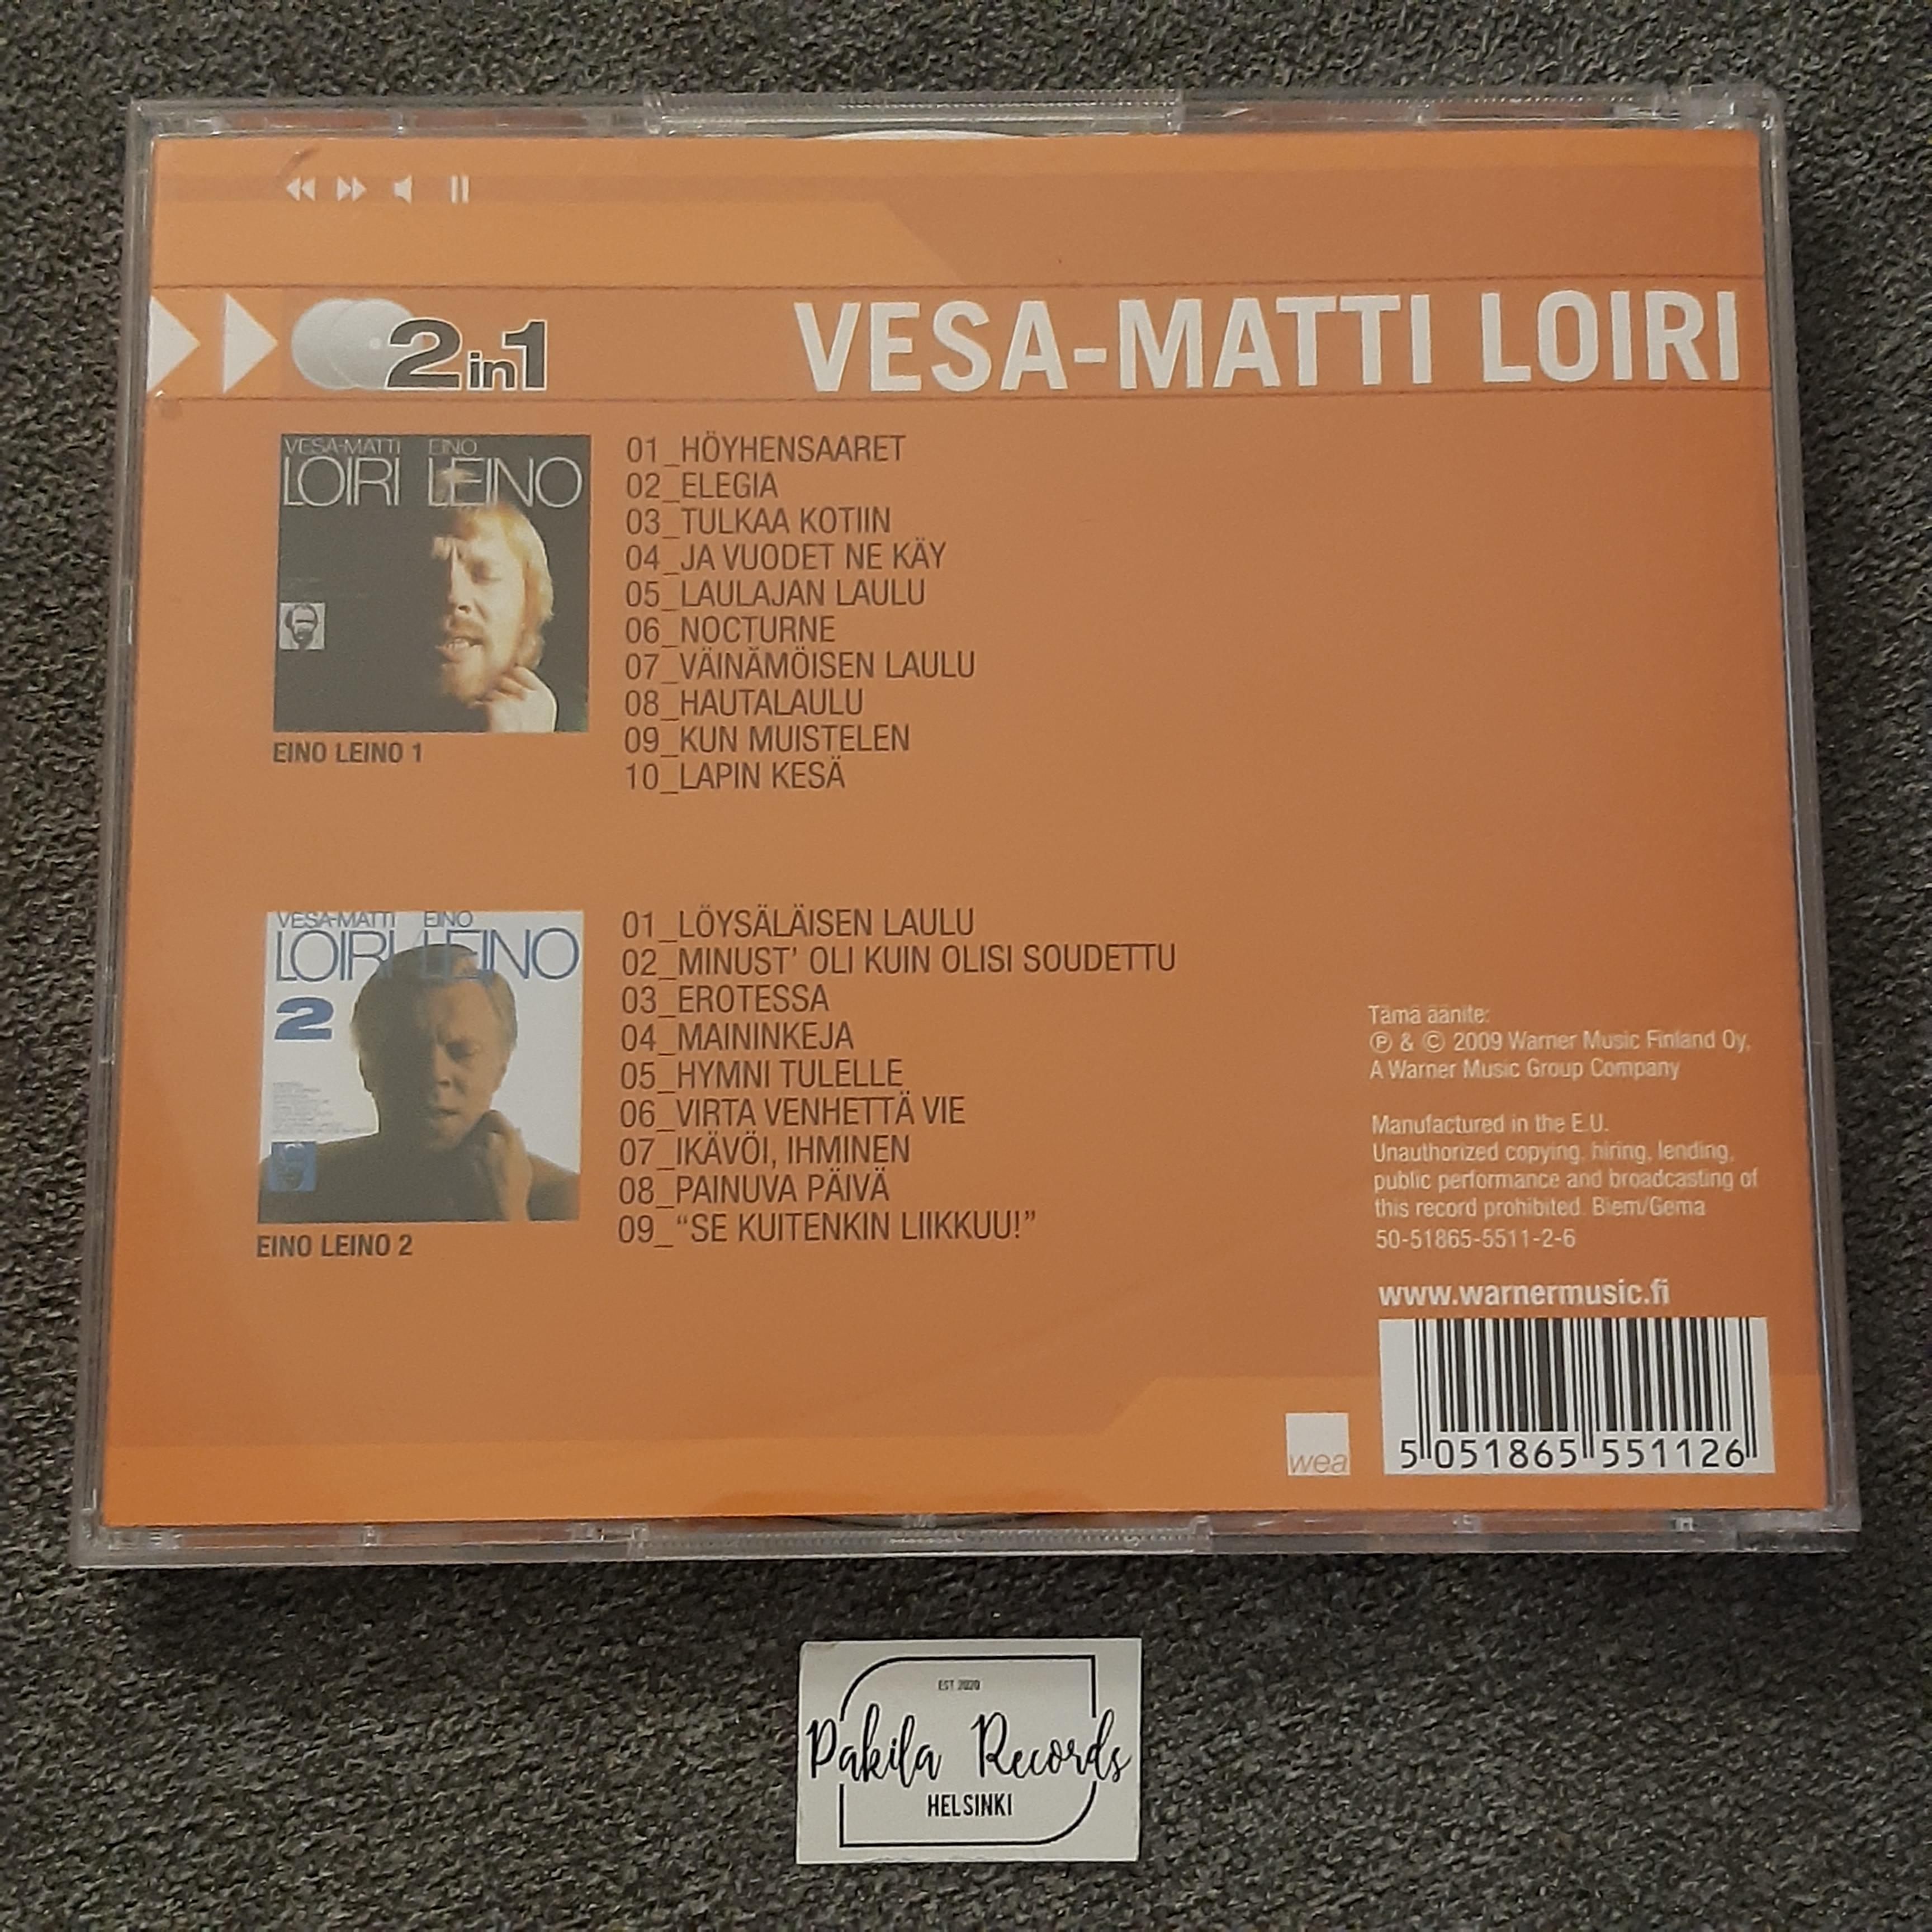 Vesa-Matti Loiri - Eino Leino 1 / Eino Leino 2 - 2 CD (käytetty)